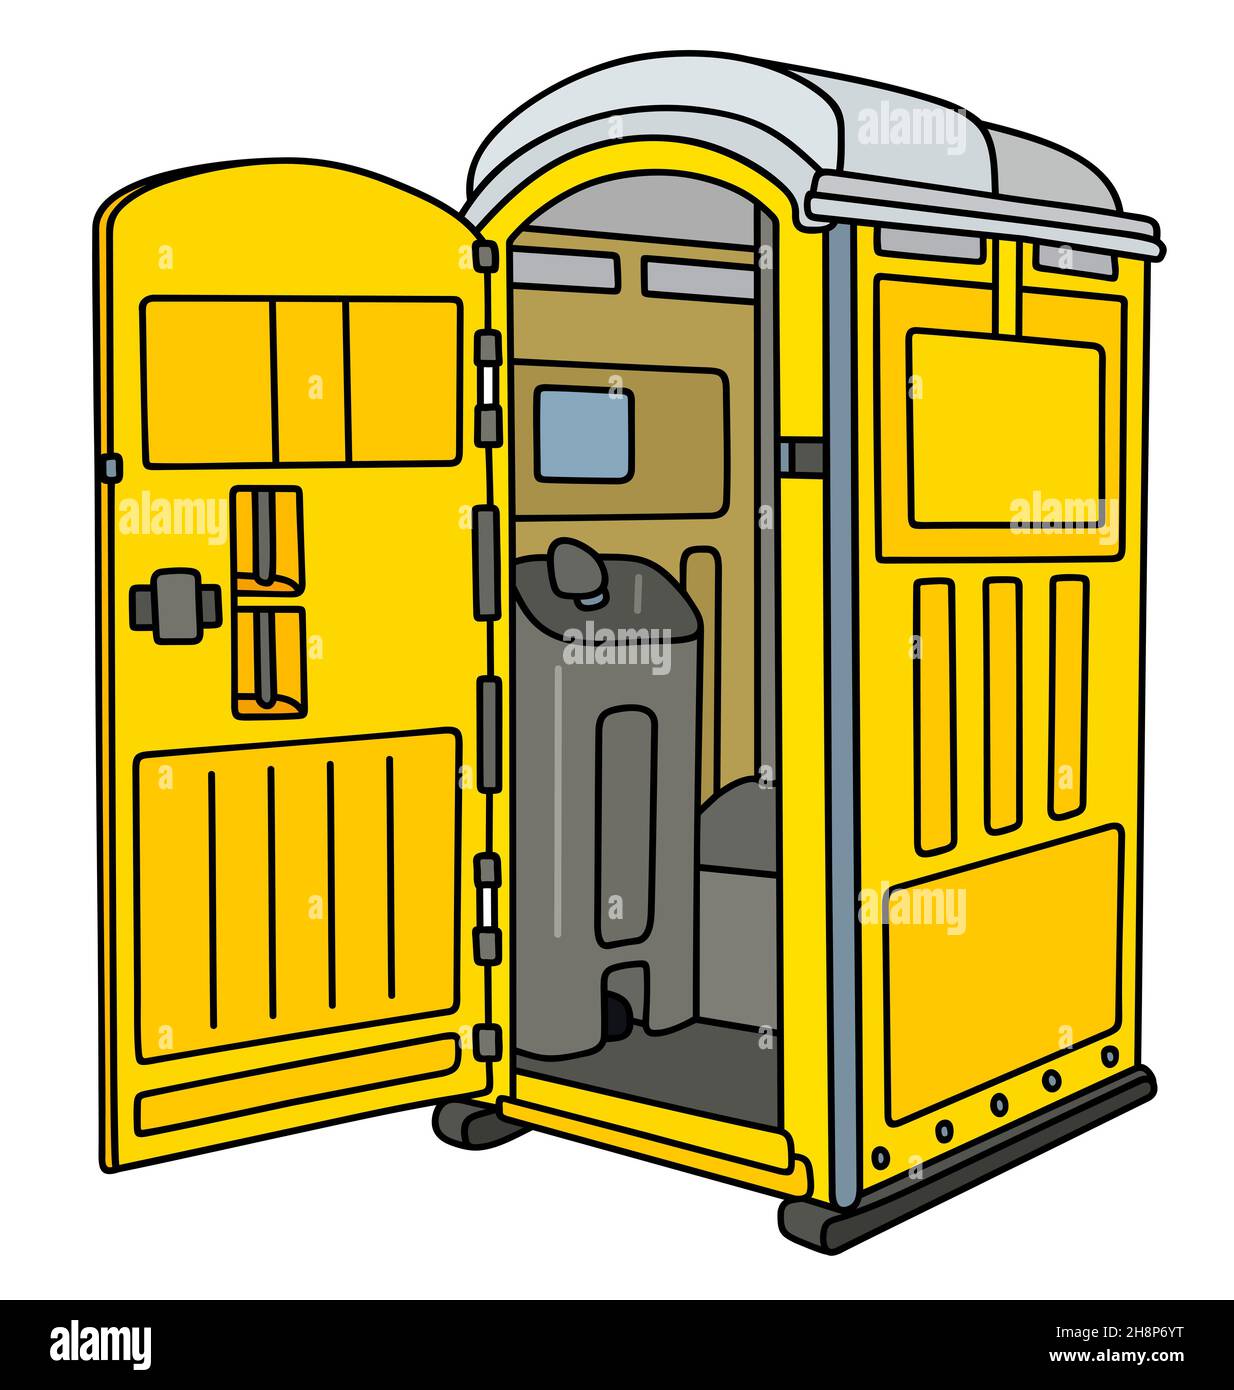 Disegno a mano di un gabinetto mobile aperto in plastica gialla Foto Stock